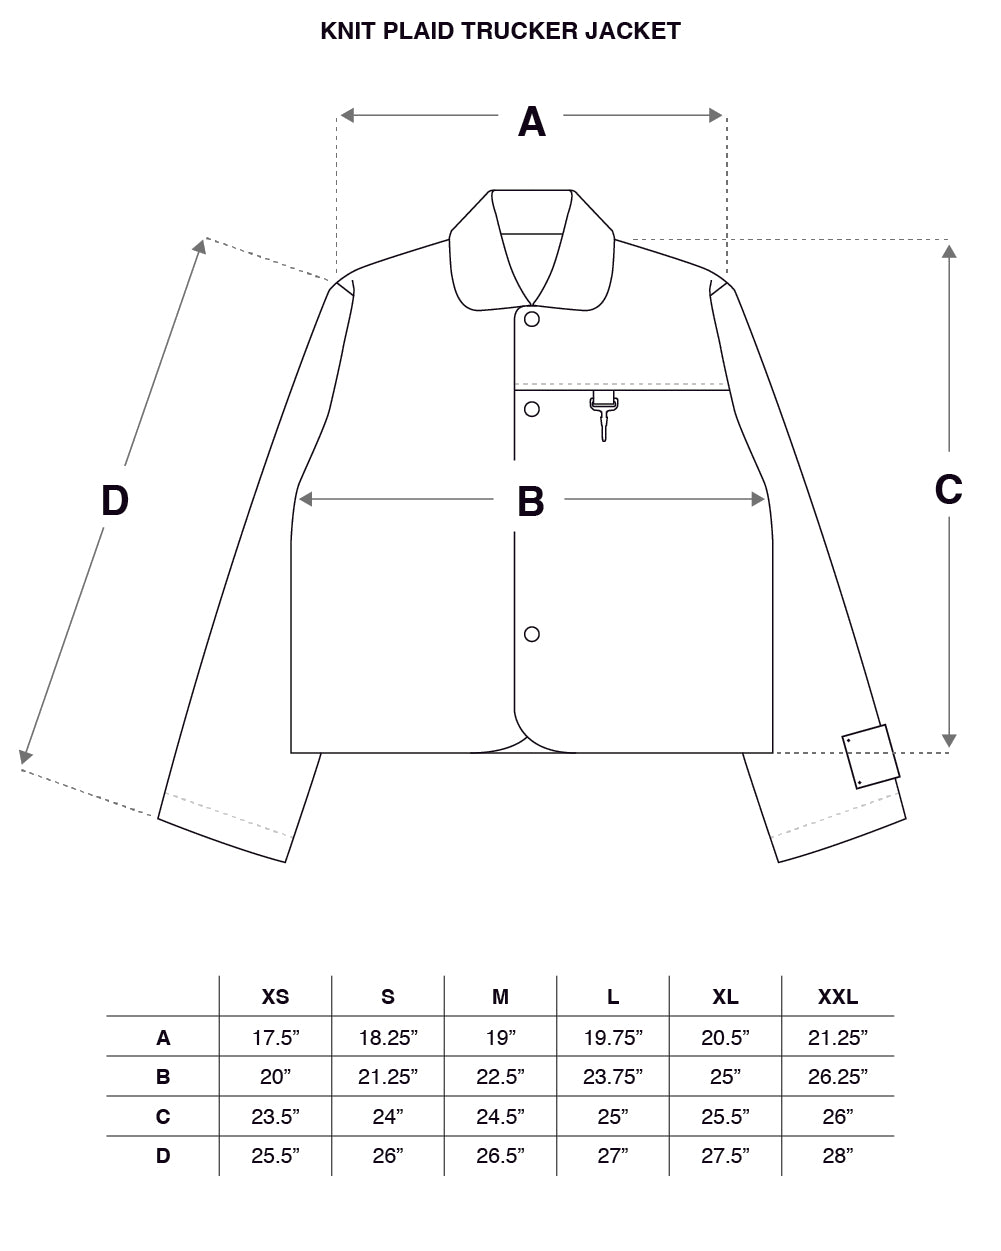 Knit Plaid Wool Trucker Jacket Size Guide